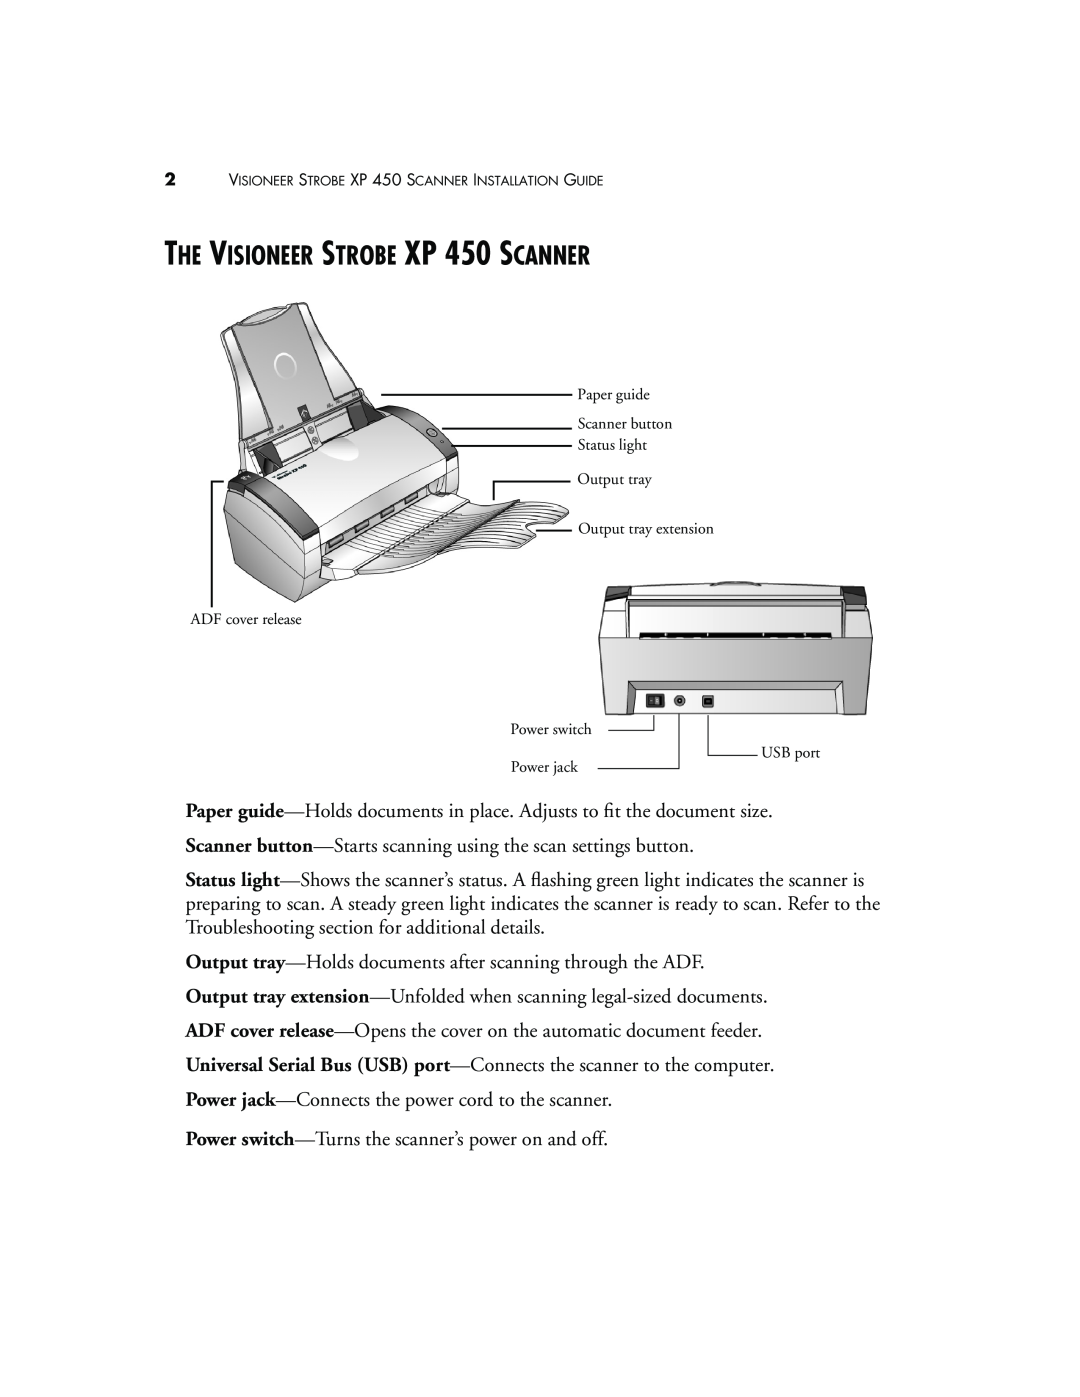 Visioneer manual THE VISIONEER STROBE XP 450 SCANNER 